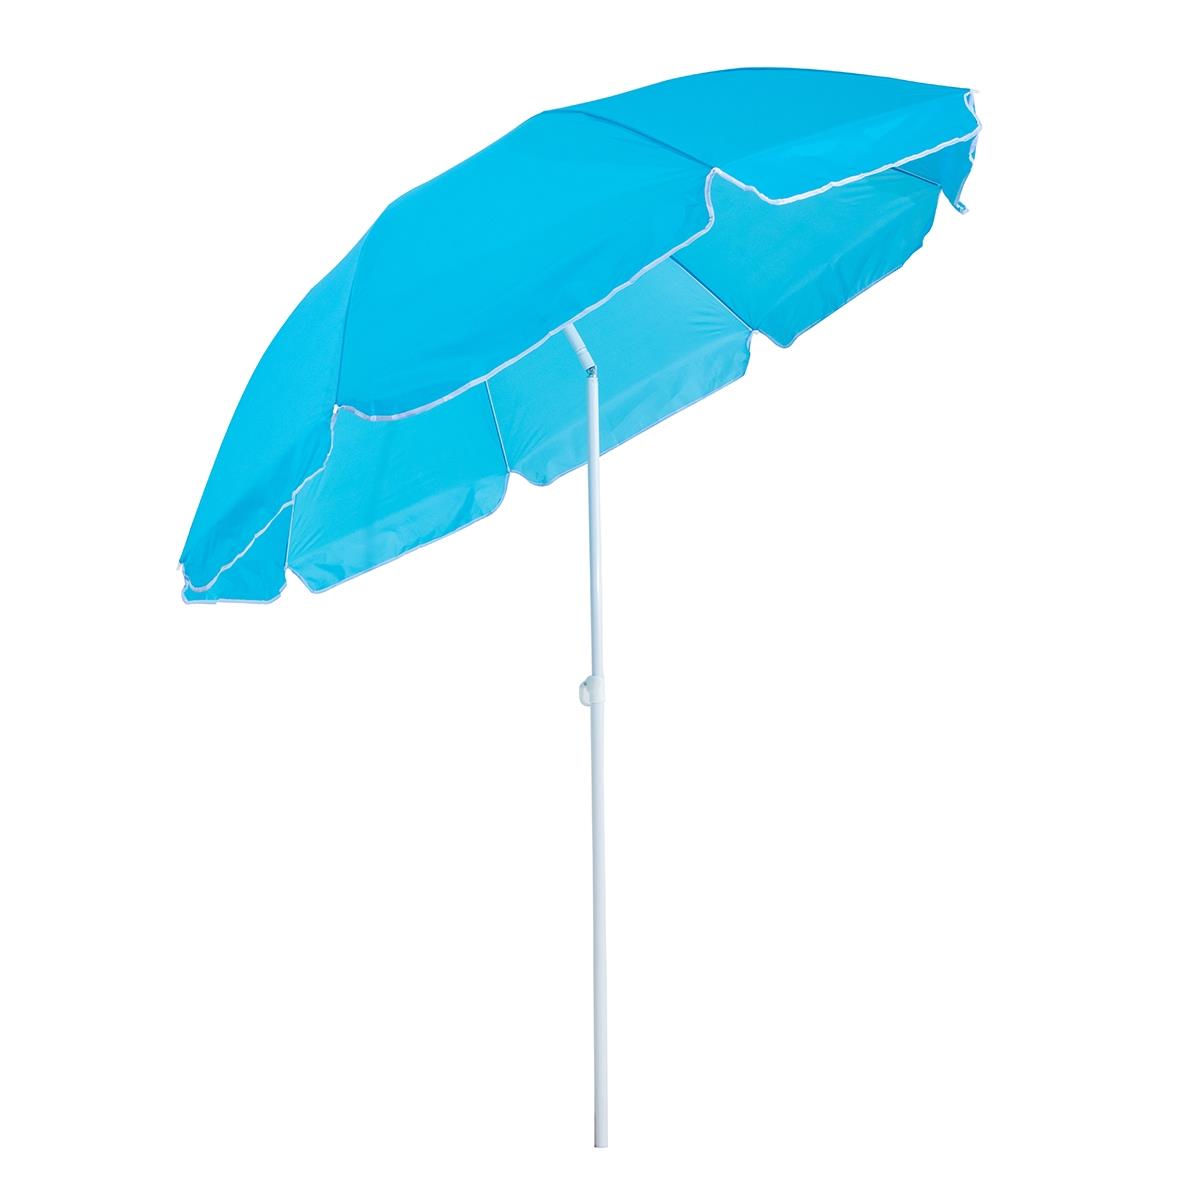 Зонт пляжный d 2,00м с наклоном голубой (22/25/170Т) NA-200N-B Nisus зонт пляжный d 2 00м с наклоном салатовый 28 32 210d na 200n lg nisus